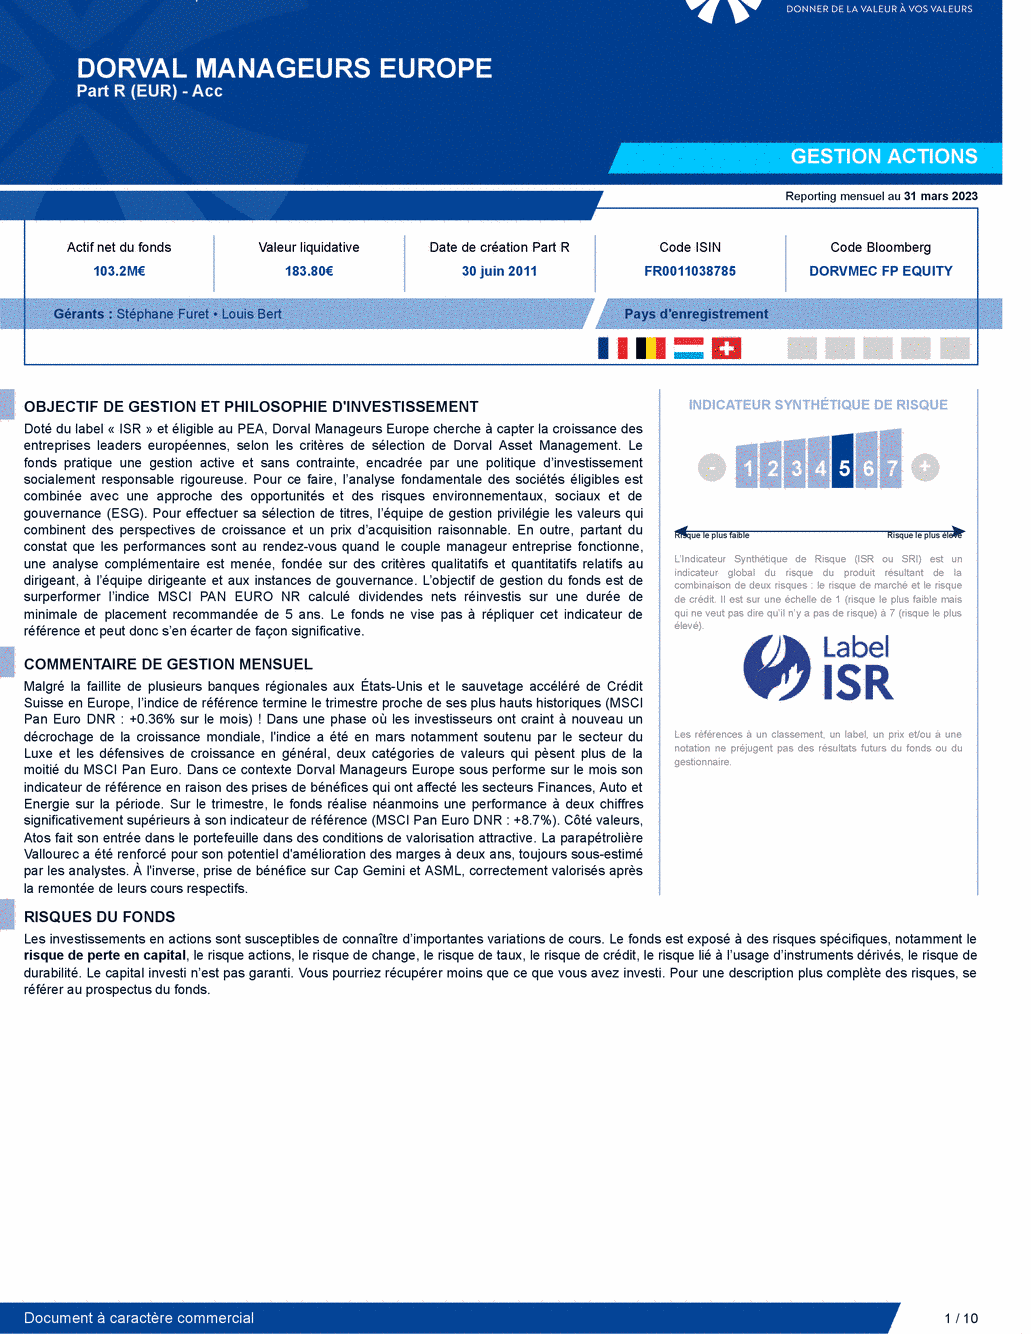 Reporting DORVAL MANAGEURS EUROPE - 31/03/2023 - Français